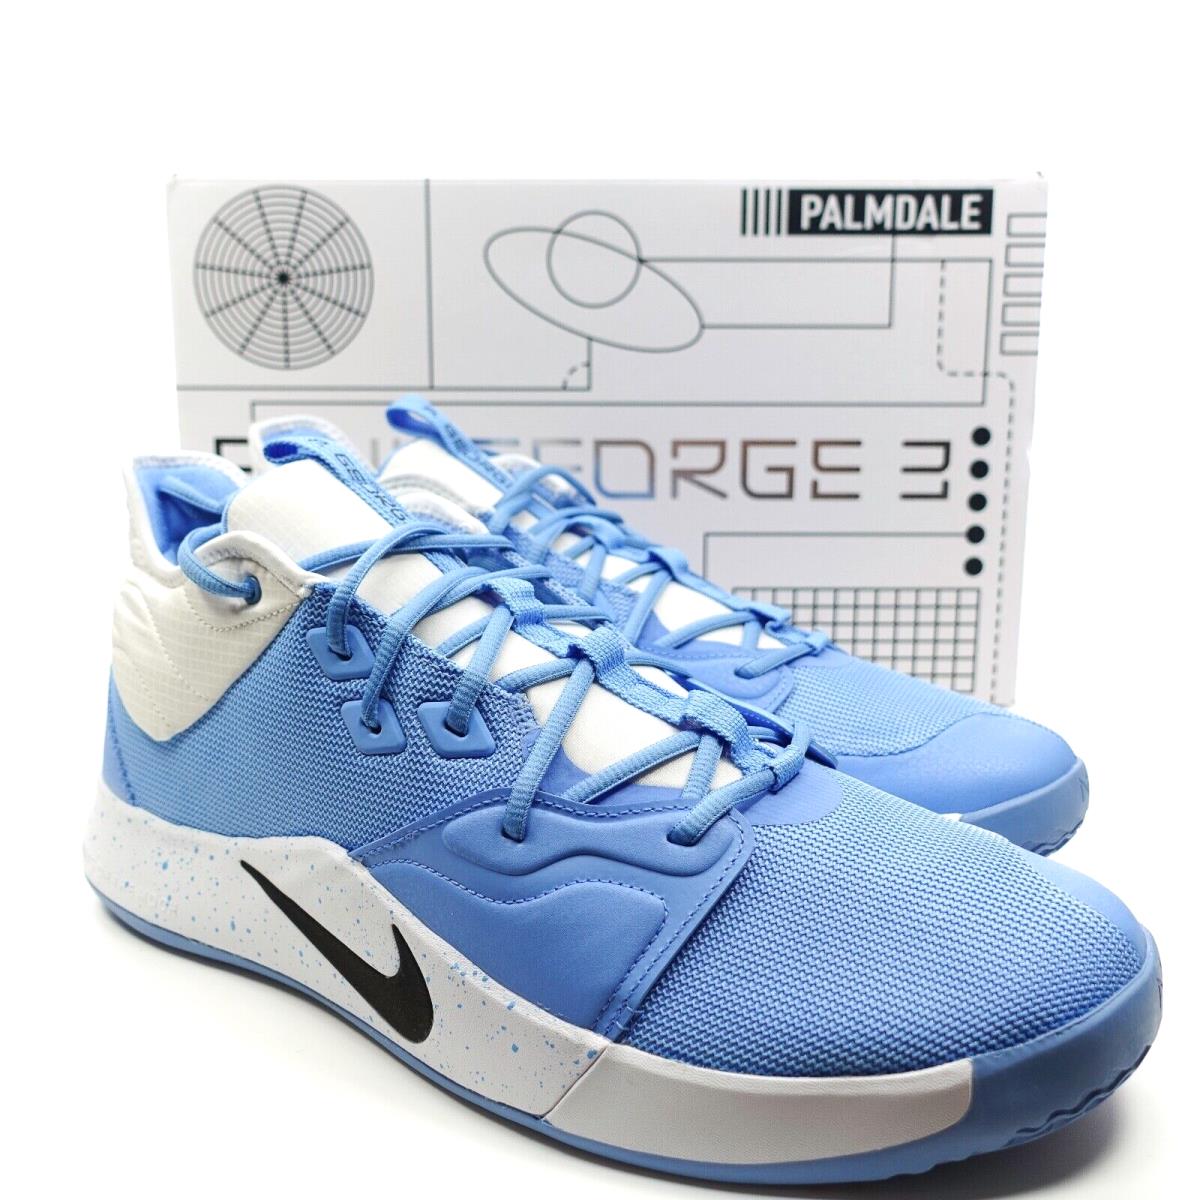 Nike PG 3 TB Promo University Blue Basketball Shoes Men`s Size 15 CN9513-403